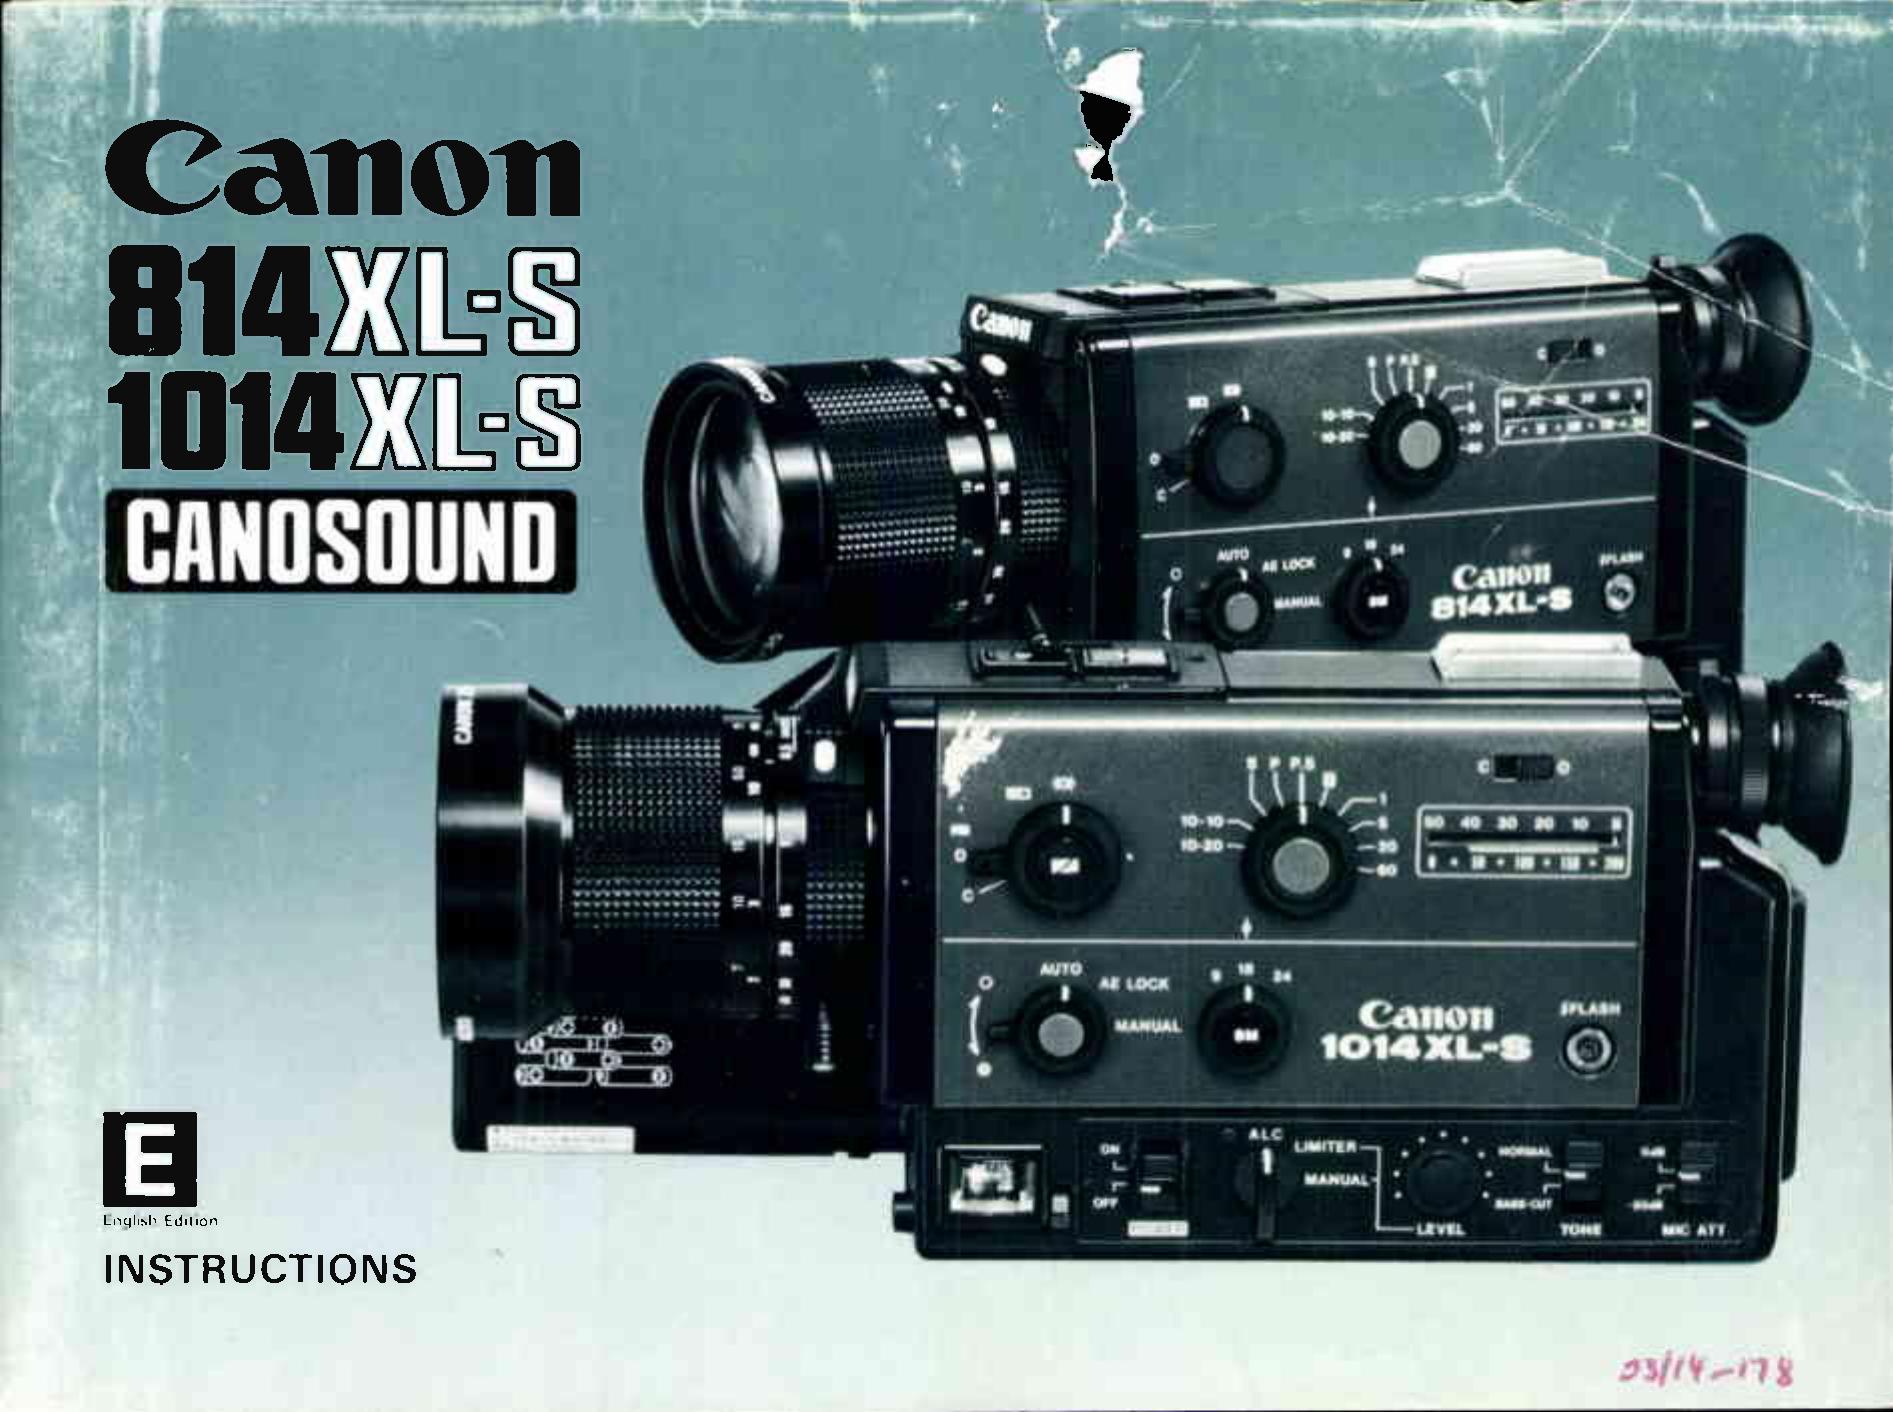 Canon 1014XL-S Camcorder User Manual